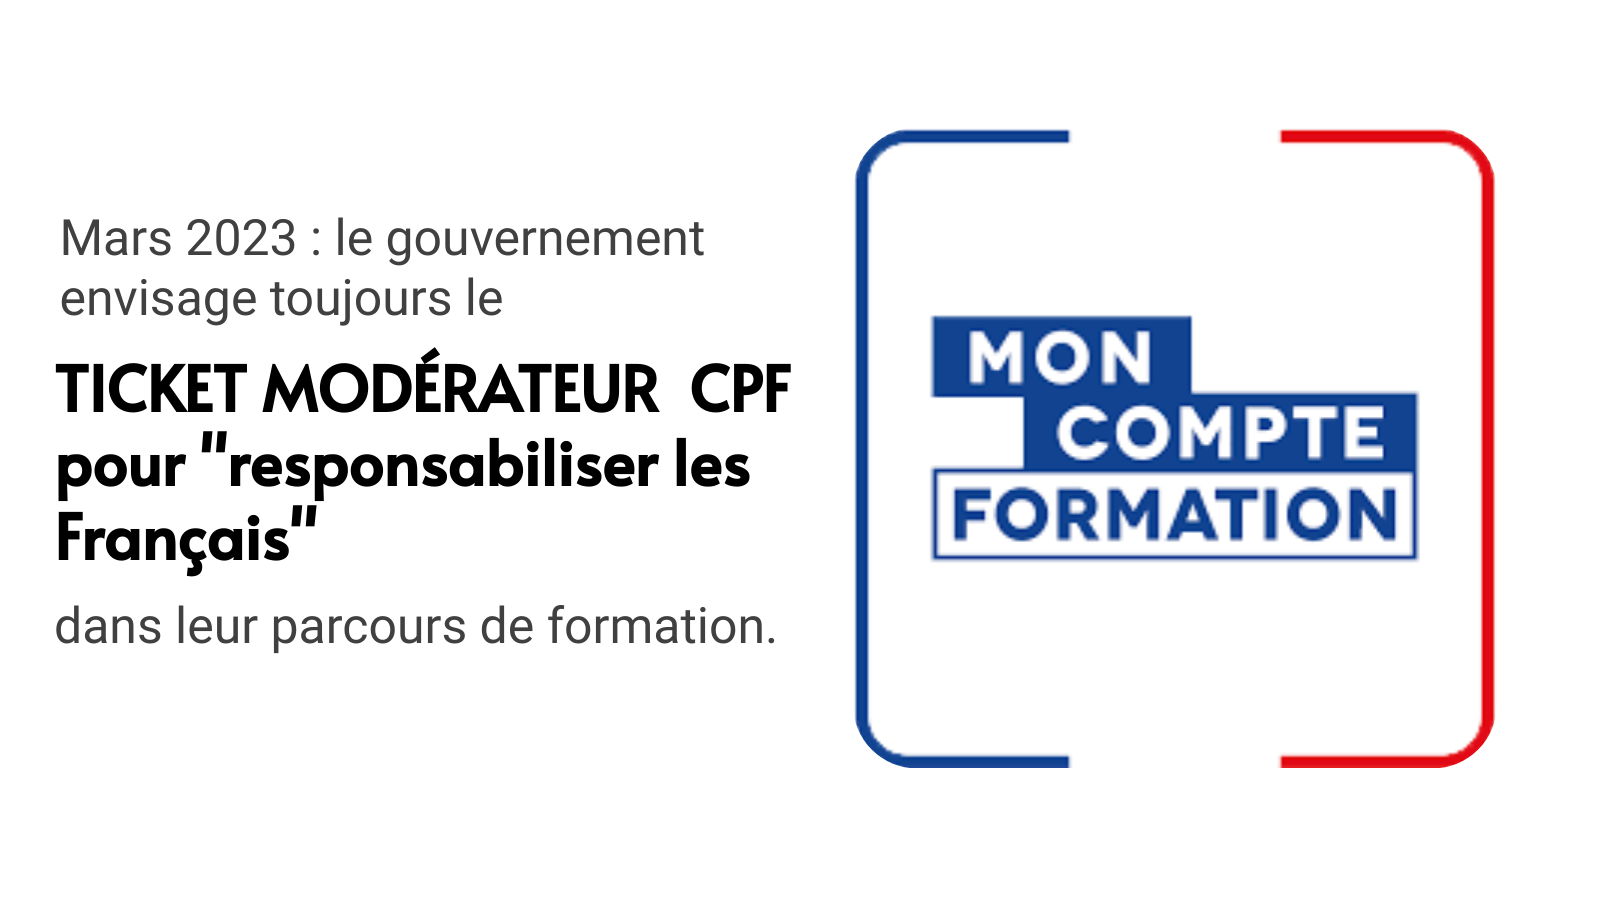 Le ticket modérateur CPF est toujours envisagé par le gouvernement pour responsabiliser les Français en matière de formation